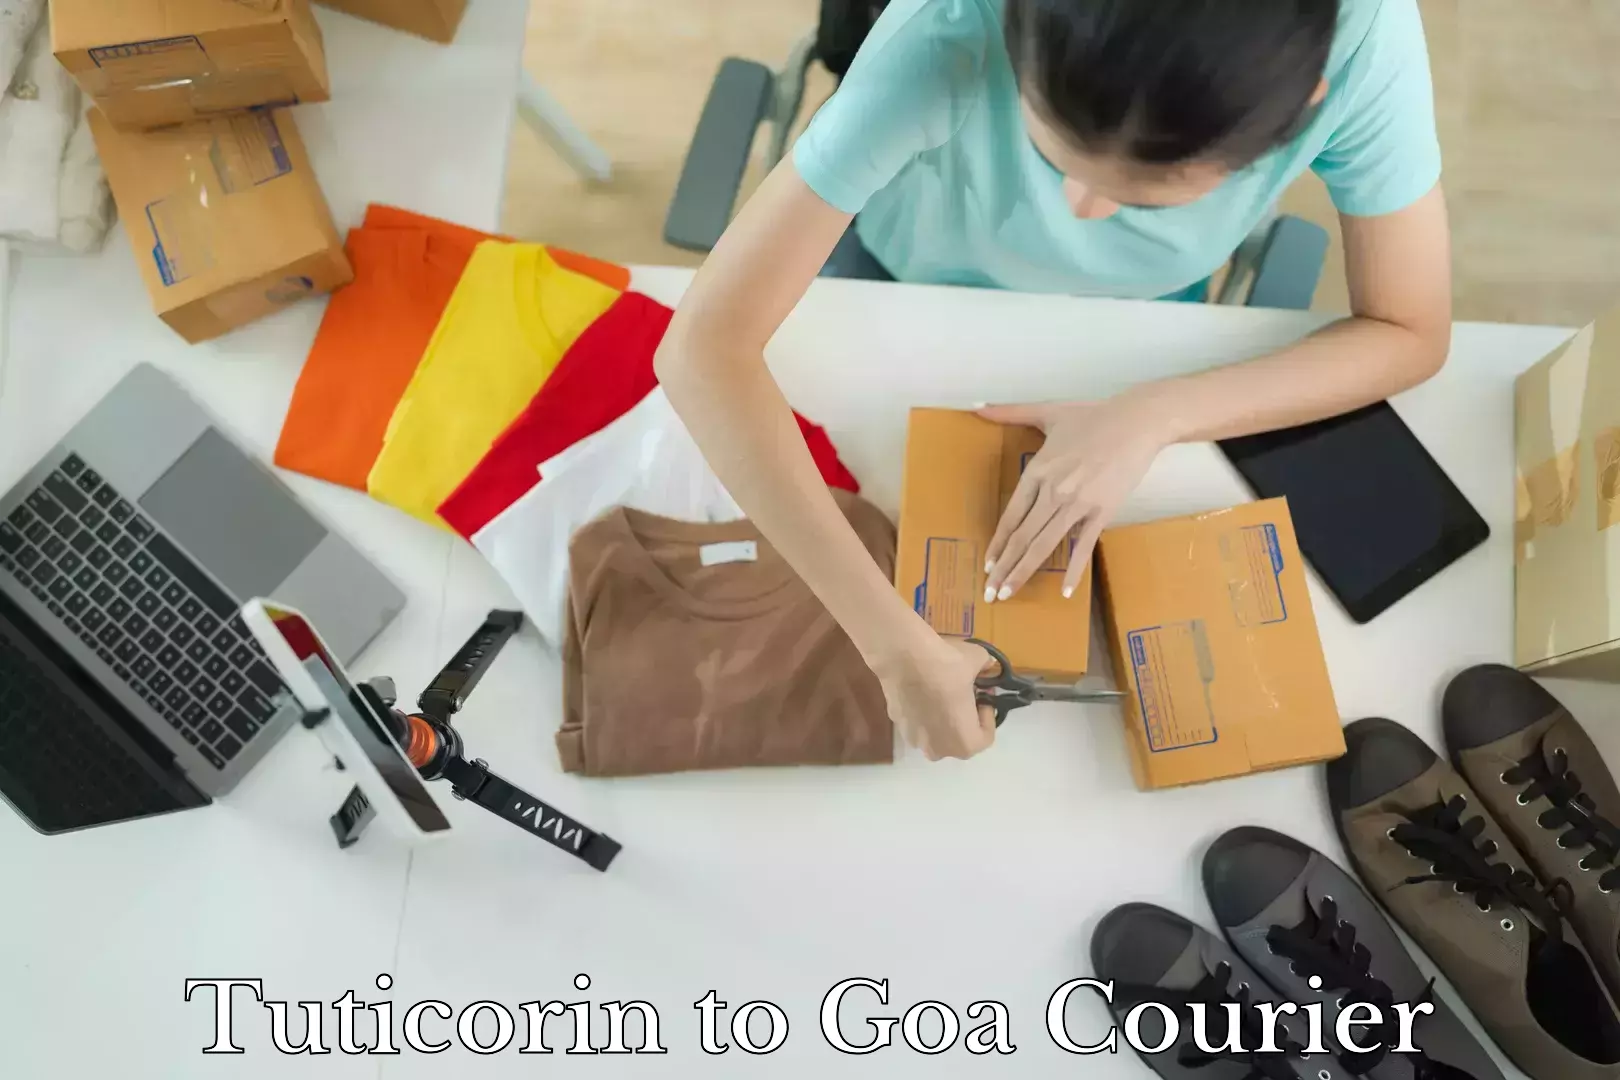 Next-generation courier services Tuticorin to Goa